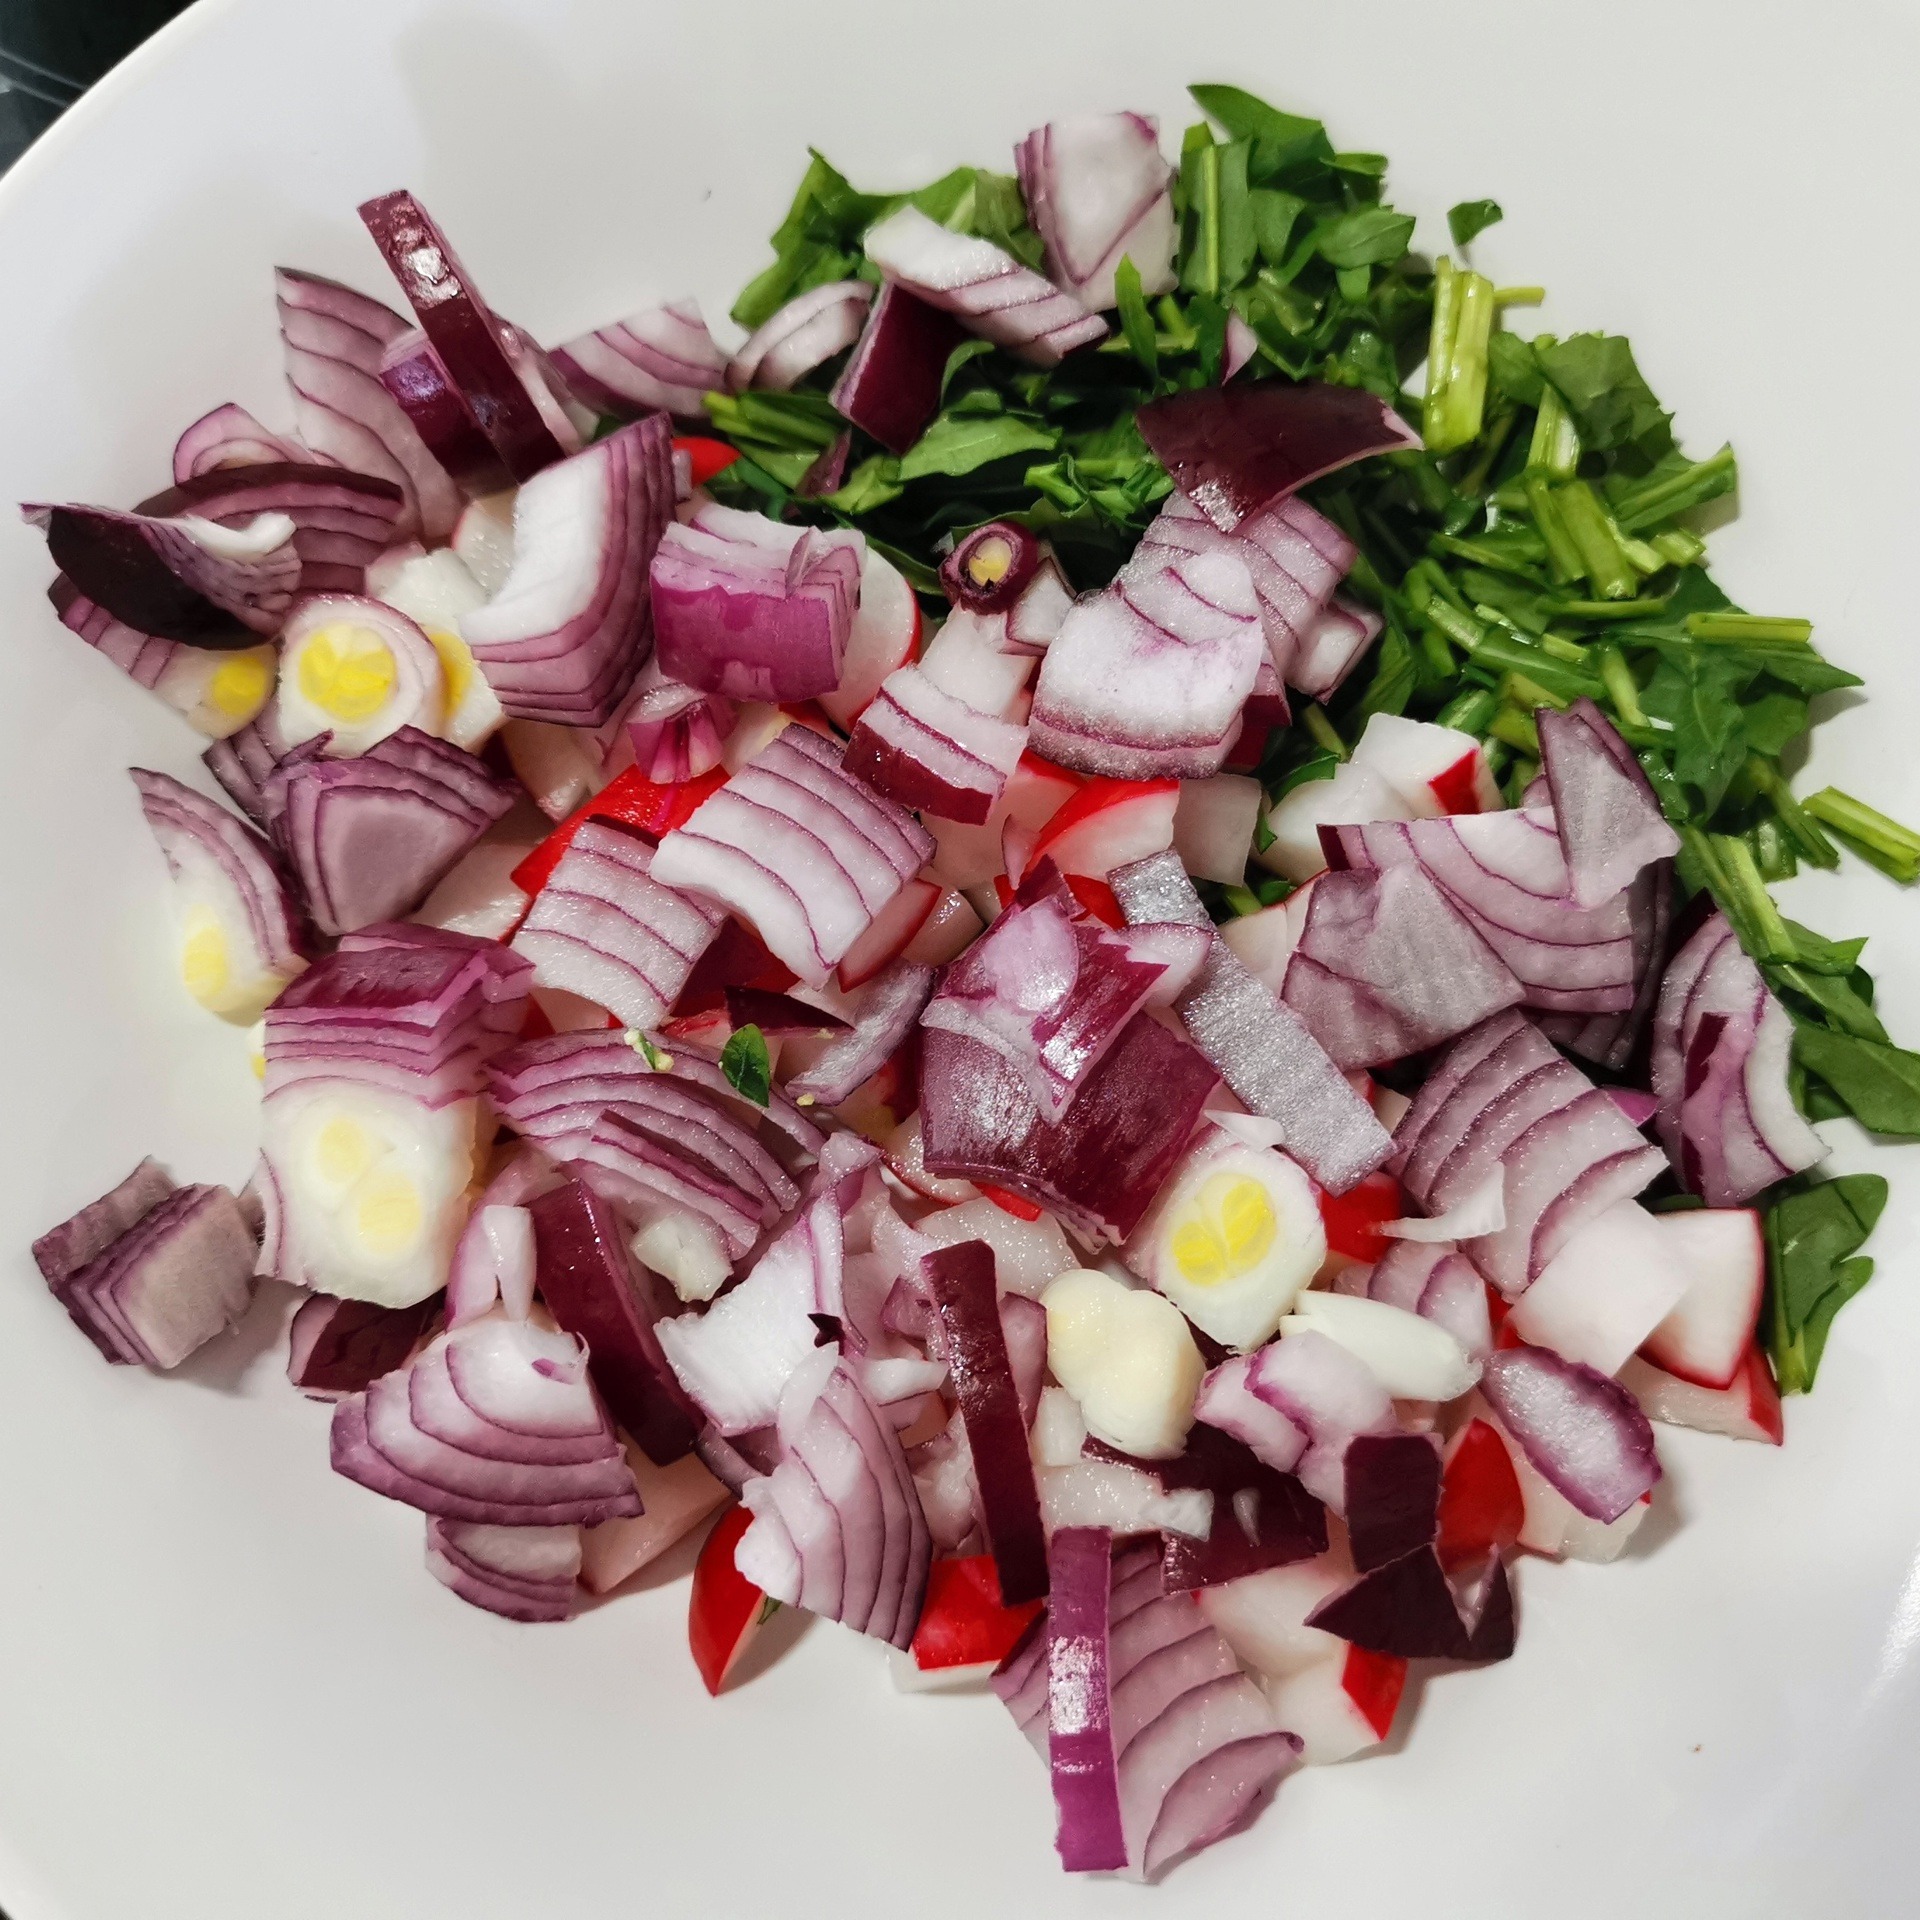 Какие существуют праздничные рецепты салатов европейской кухни?